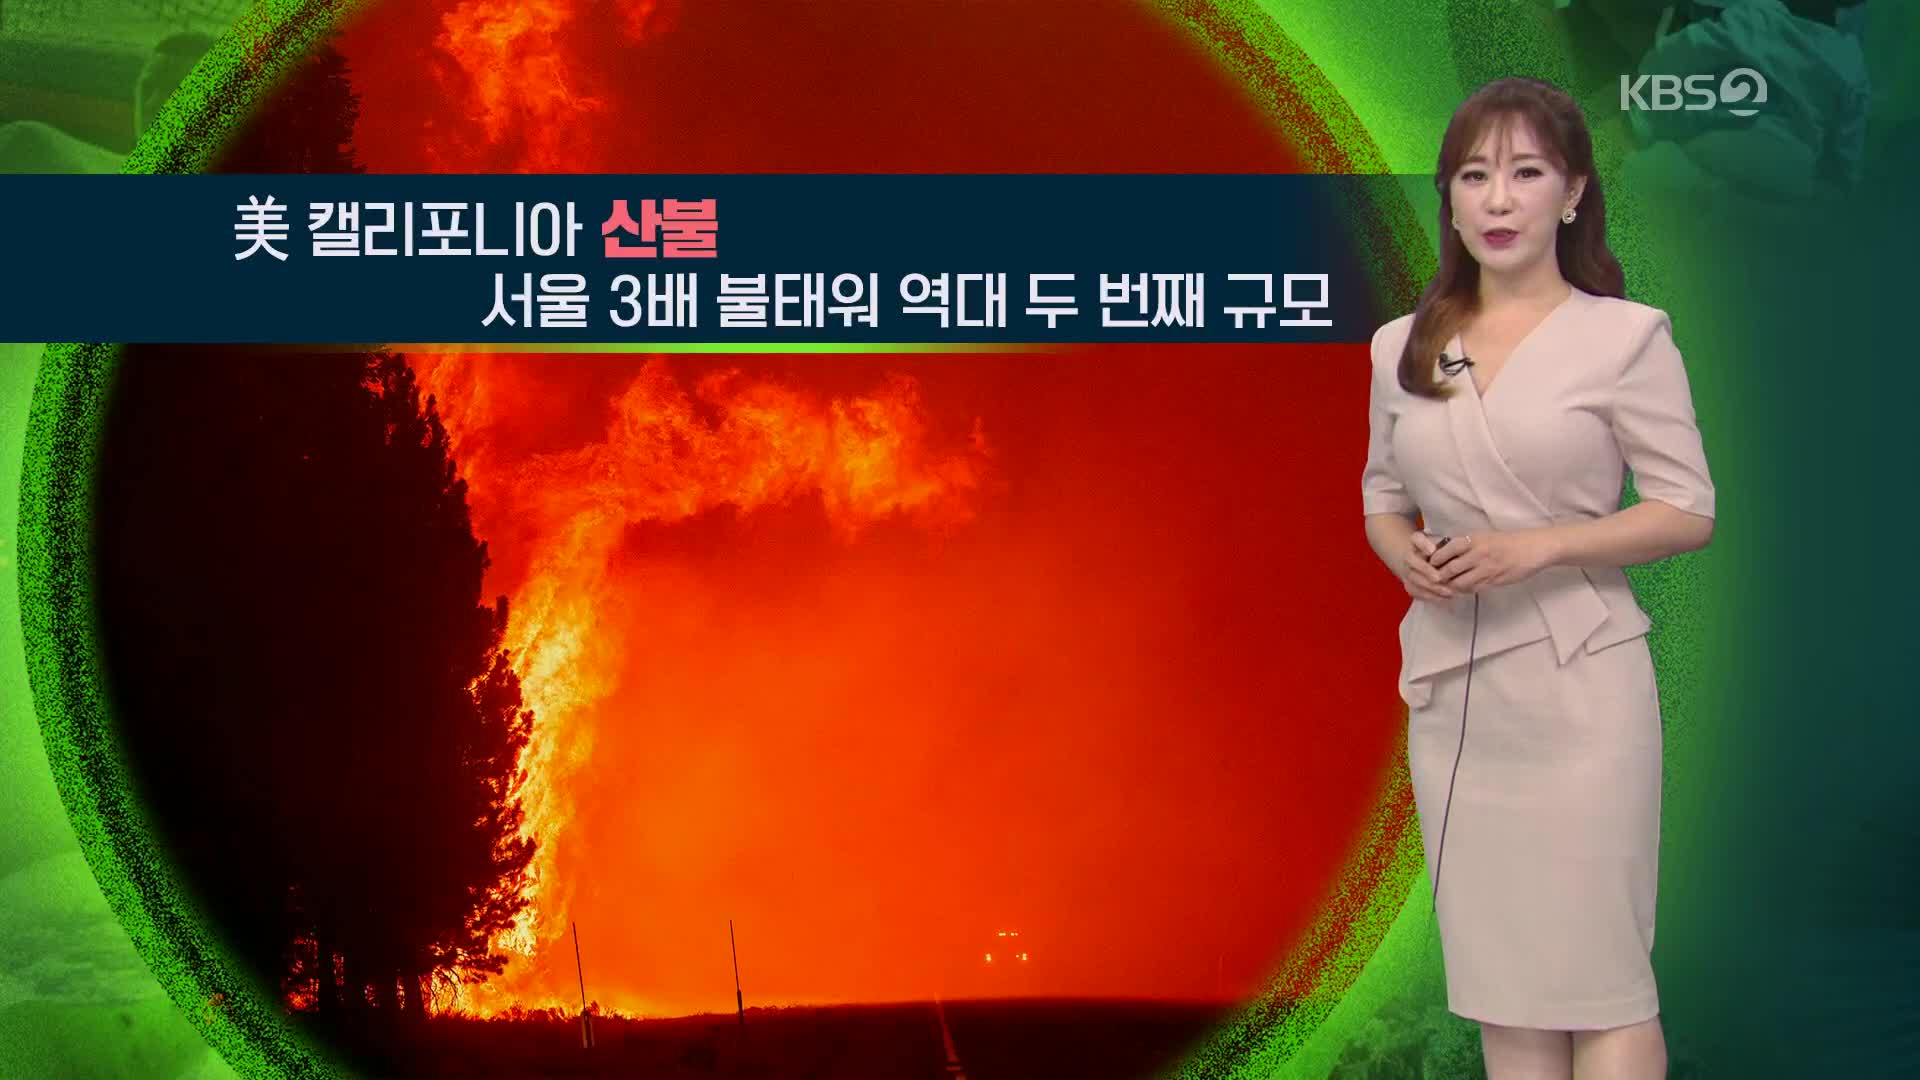 [지구촌 날씨] 미국 캘리포니아 산불, 서울 3배 불태워 역대 두번째 규모